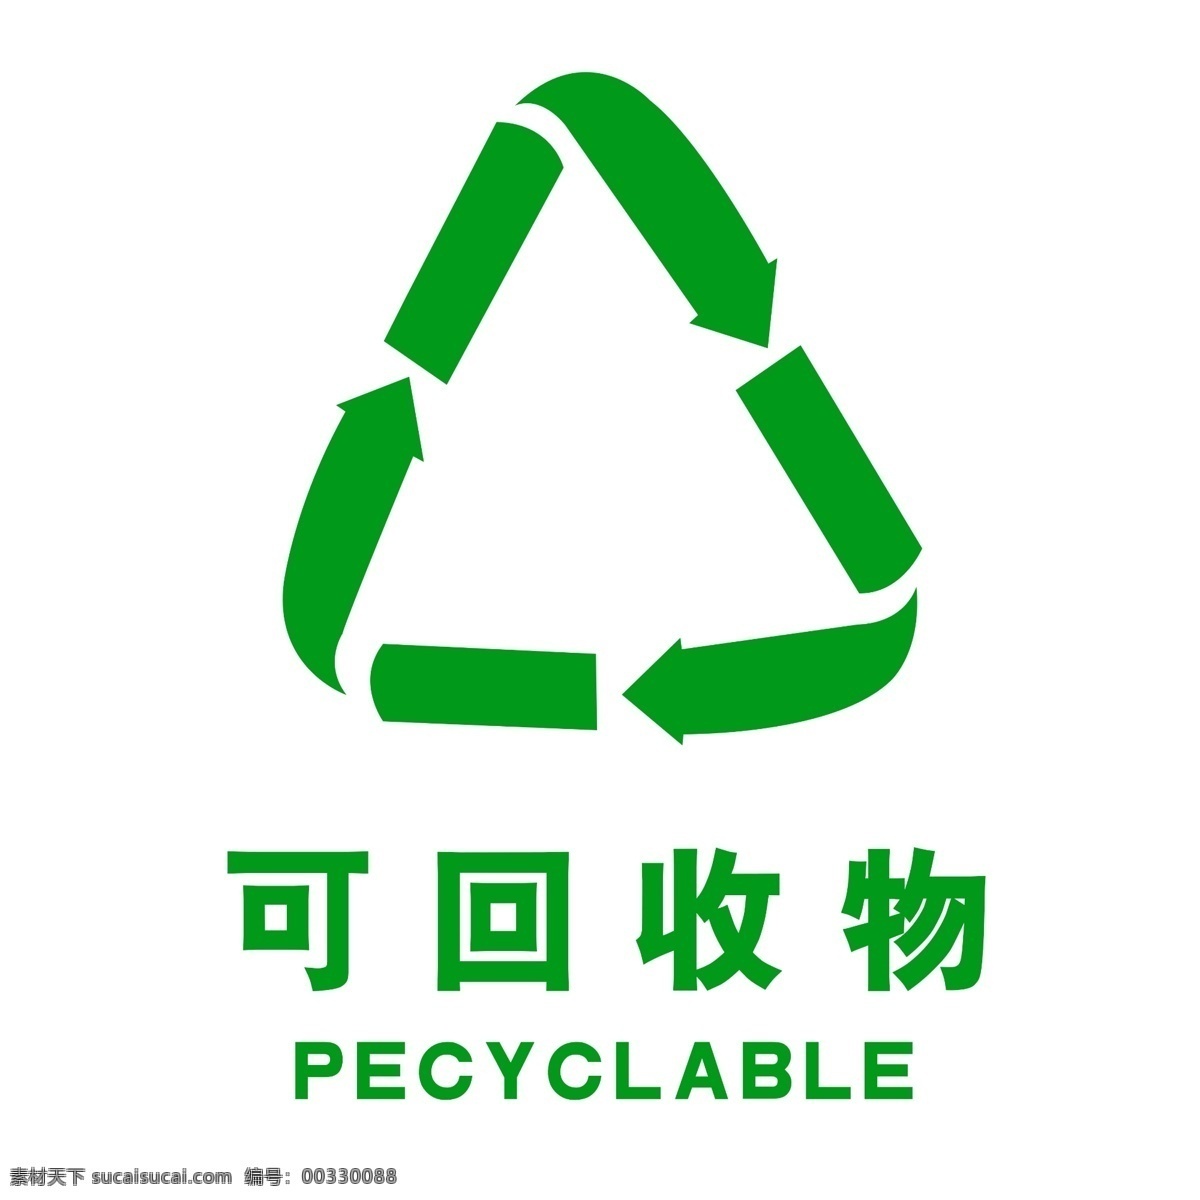 回收 物 标志 可回收物 可回收垃圾 可回收物标志 绿色环保 可回收